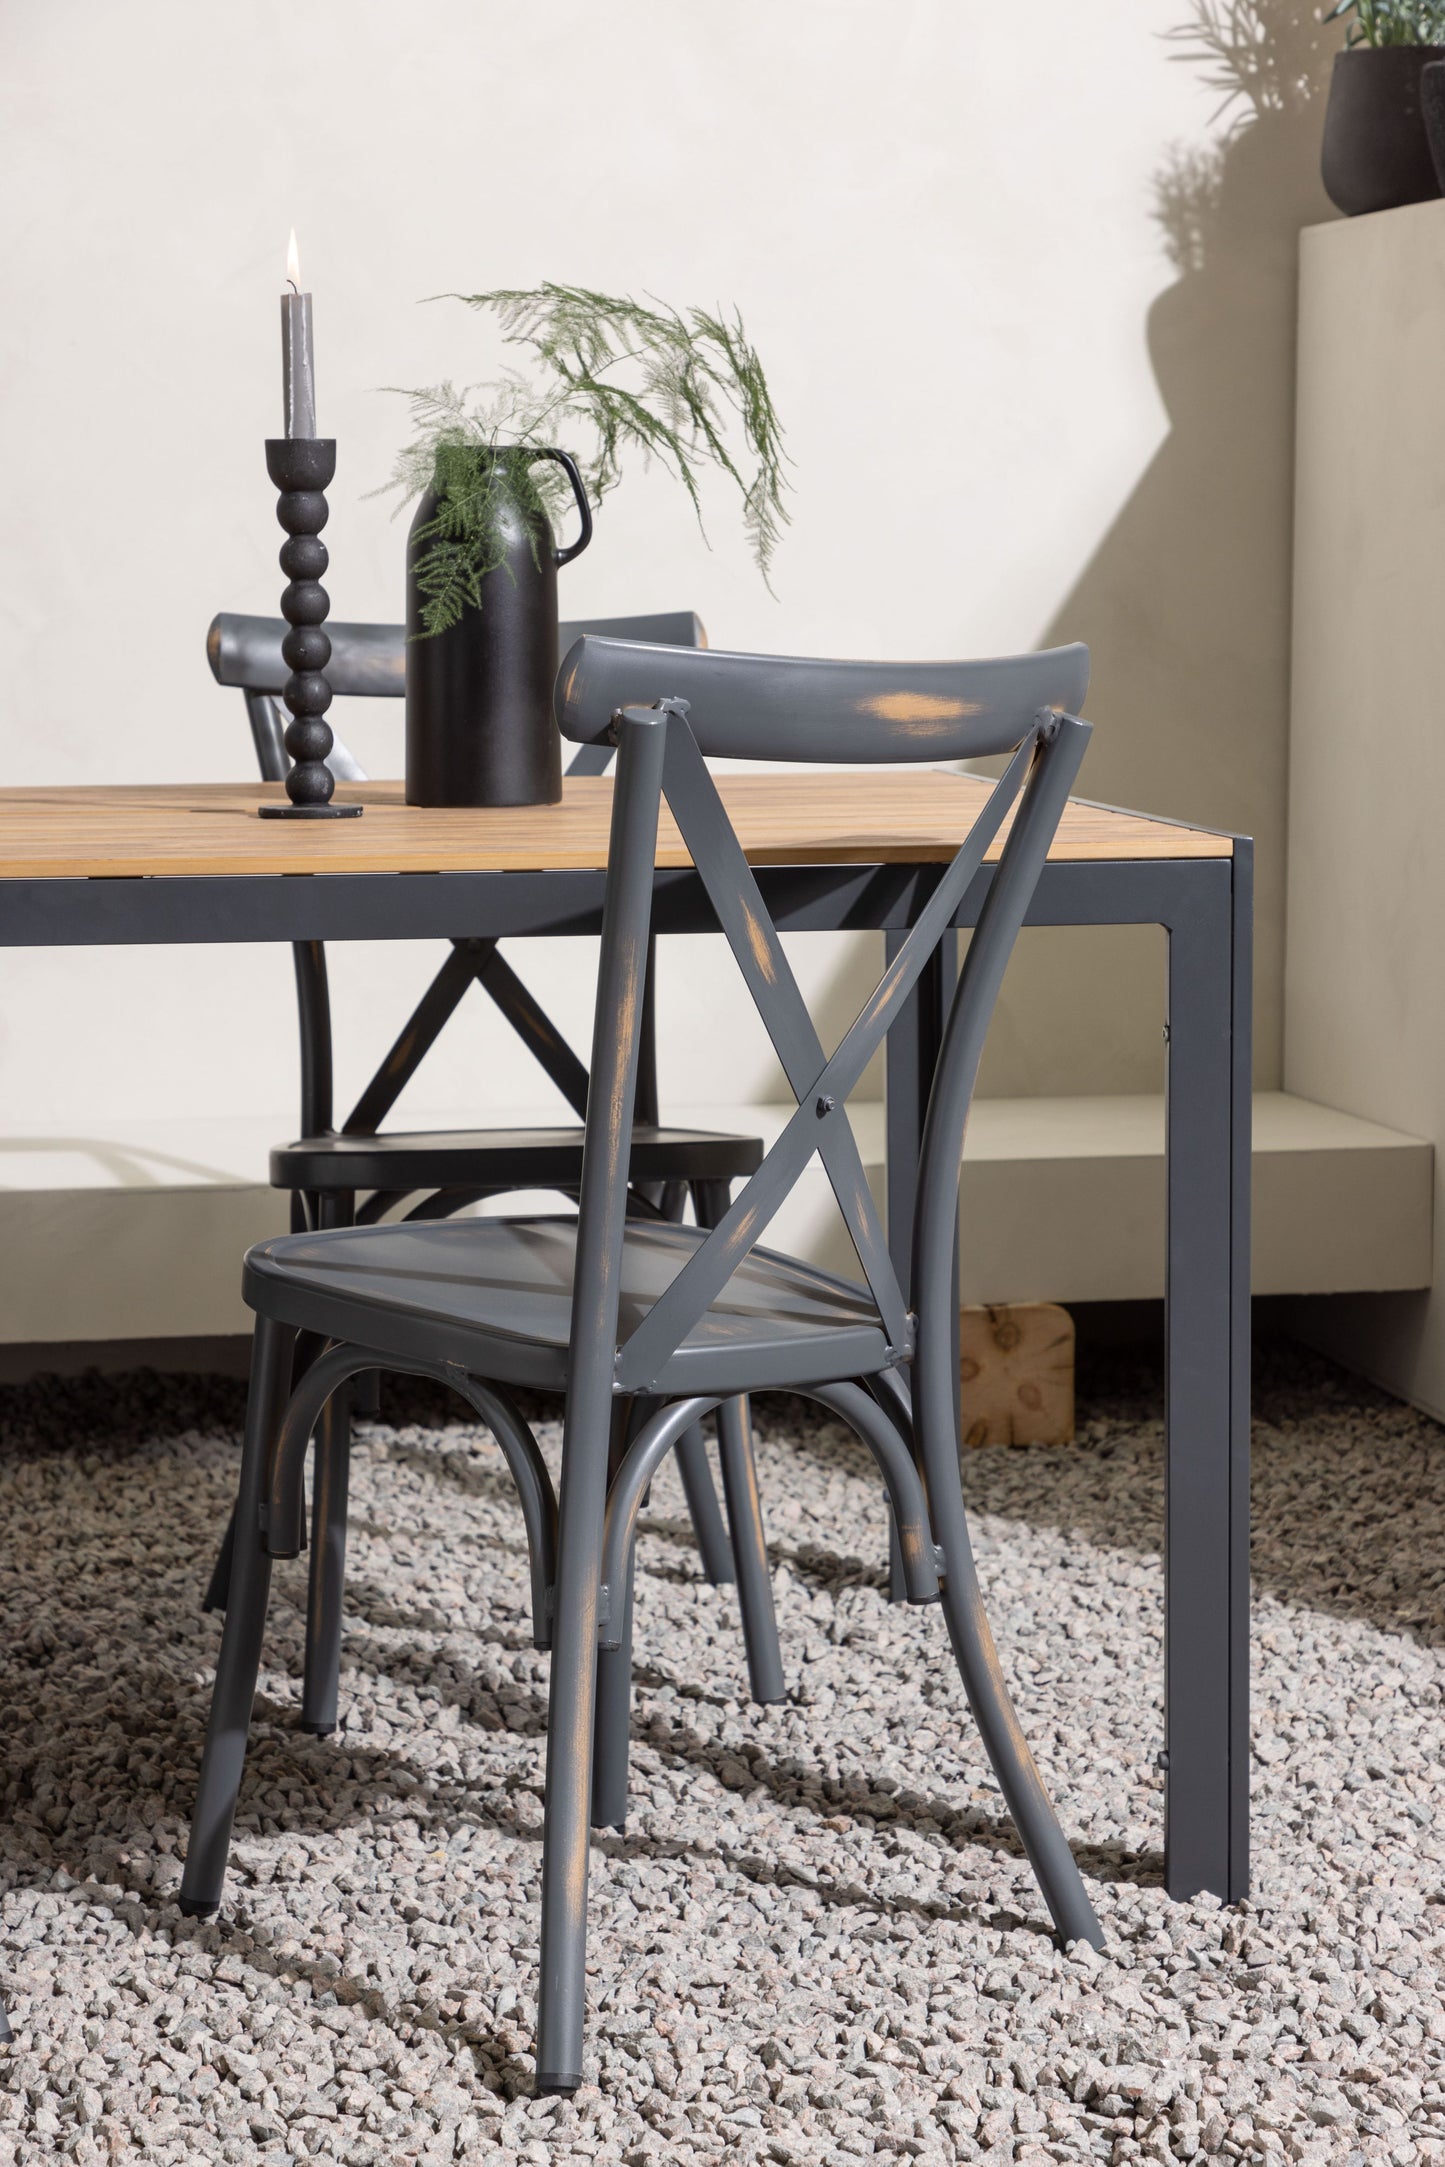 Break - Spisebord, Aluminium - Sort / Natur Rektangulær 90*150* + Tablas stol Aluminium - Sort